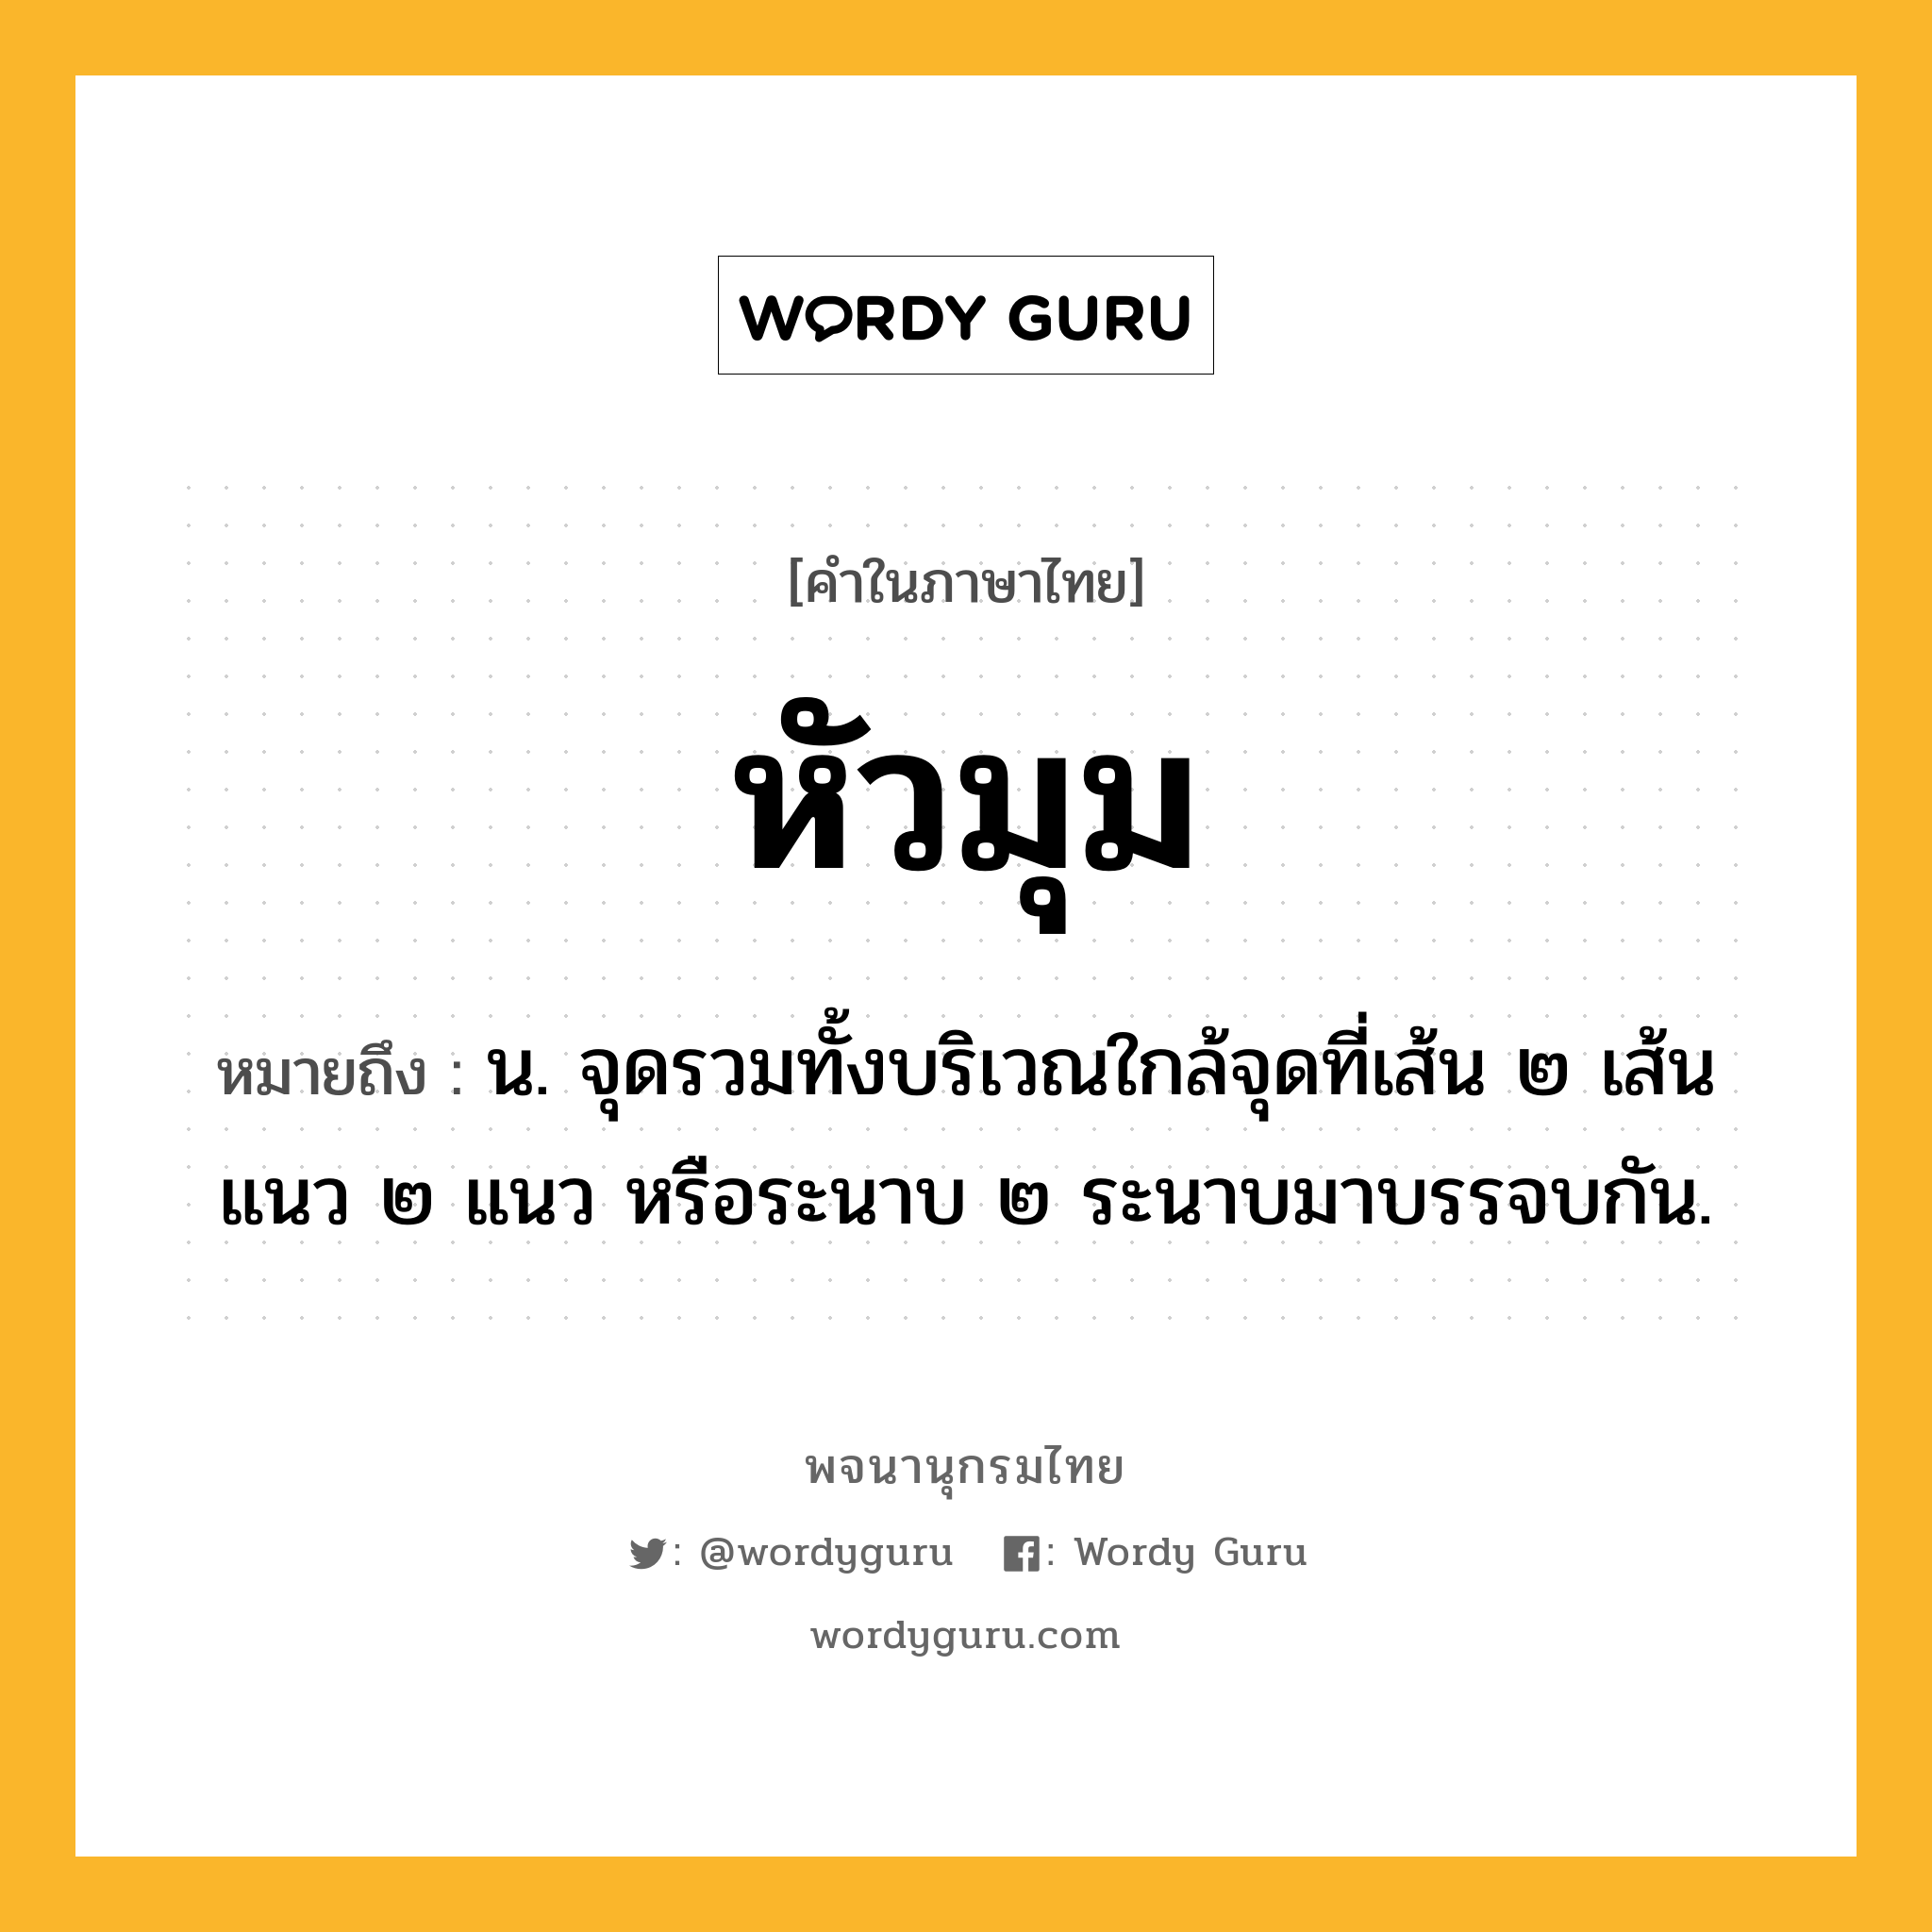 หัวมุม ความหมาย หมายถึงอะไร?, คำในภาษาไทย หัวมุม หมายถึง น. จุดรวมทั้งบริเวณใกล้จุดที่เส้น ๒ เส้น แนว ๒ แนว หรือระนาบ ๒ ระนาบมาบรรจบกัน.